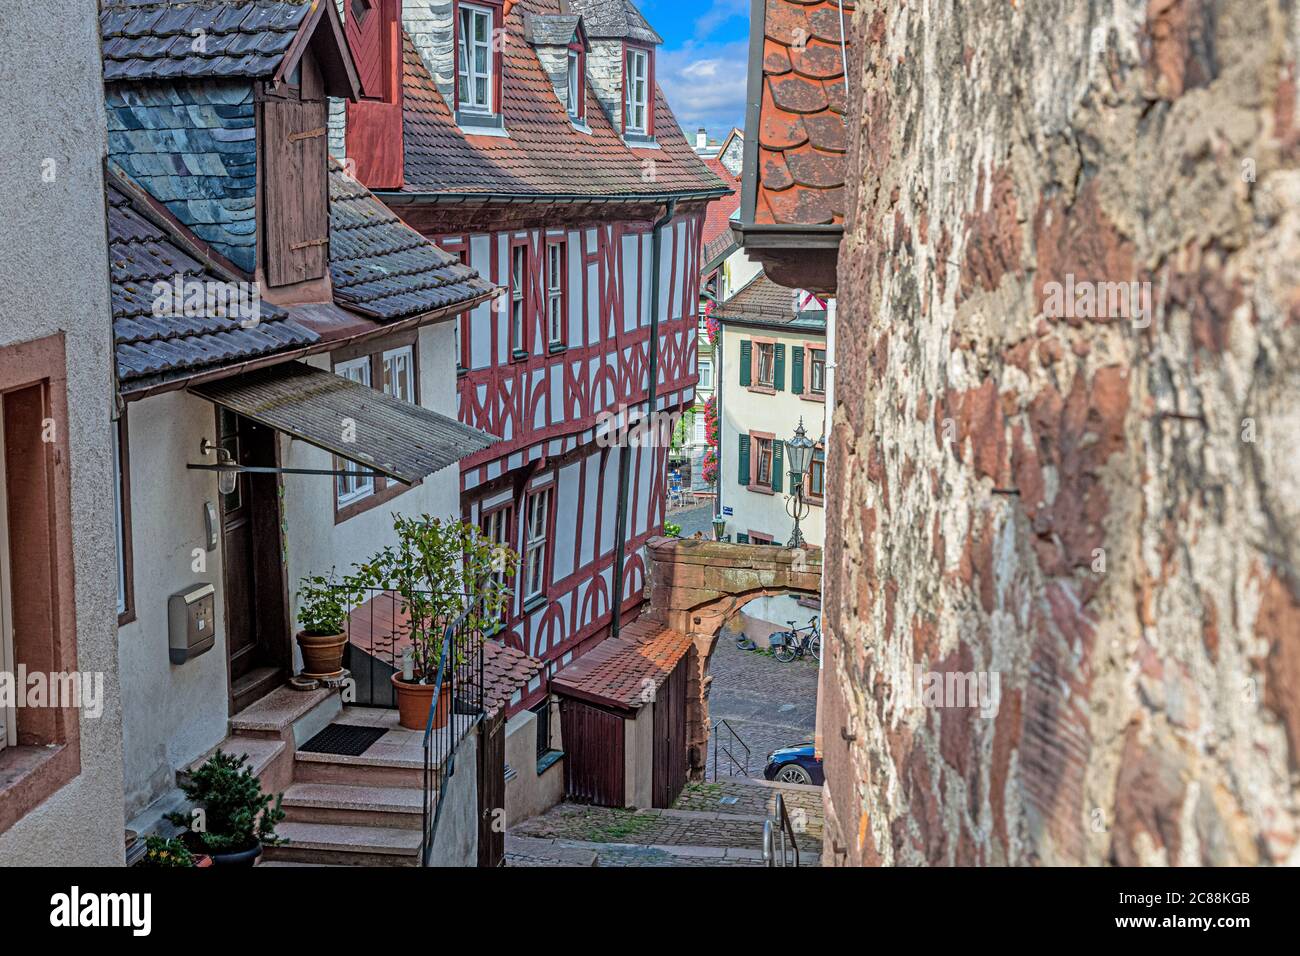 Petite ruelle dans la ville médiévale allemande de Miltenberg pendant la journée Banque D'Images